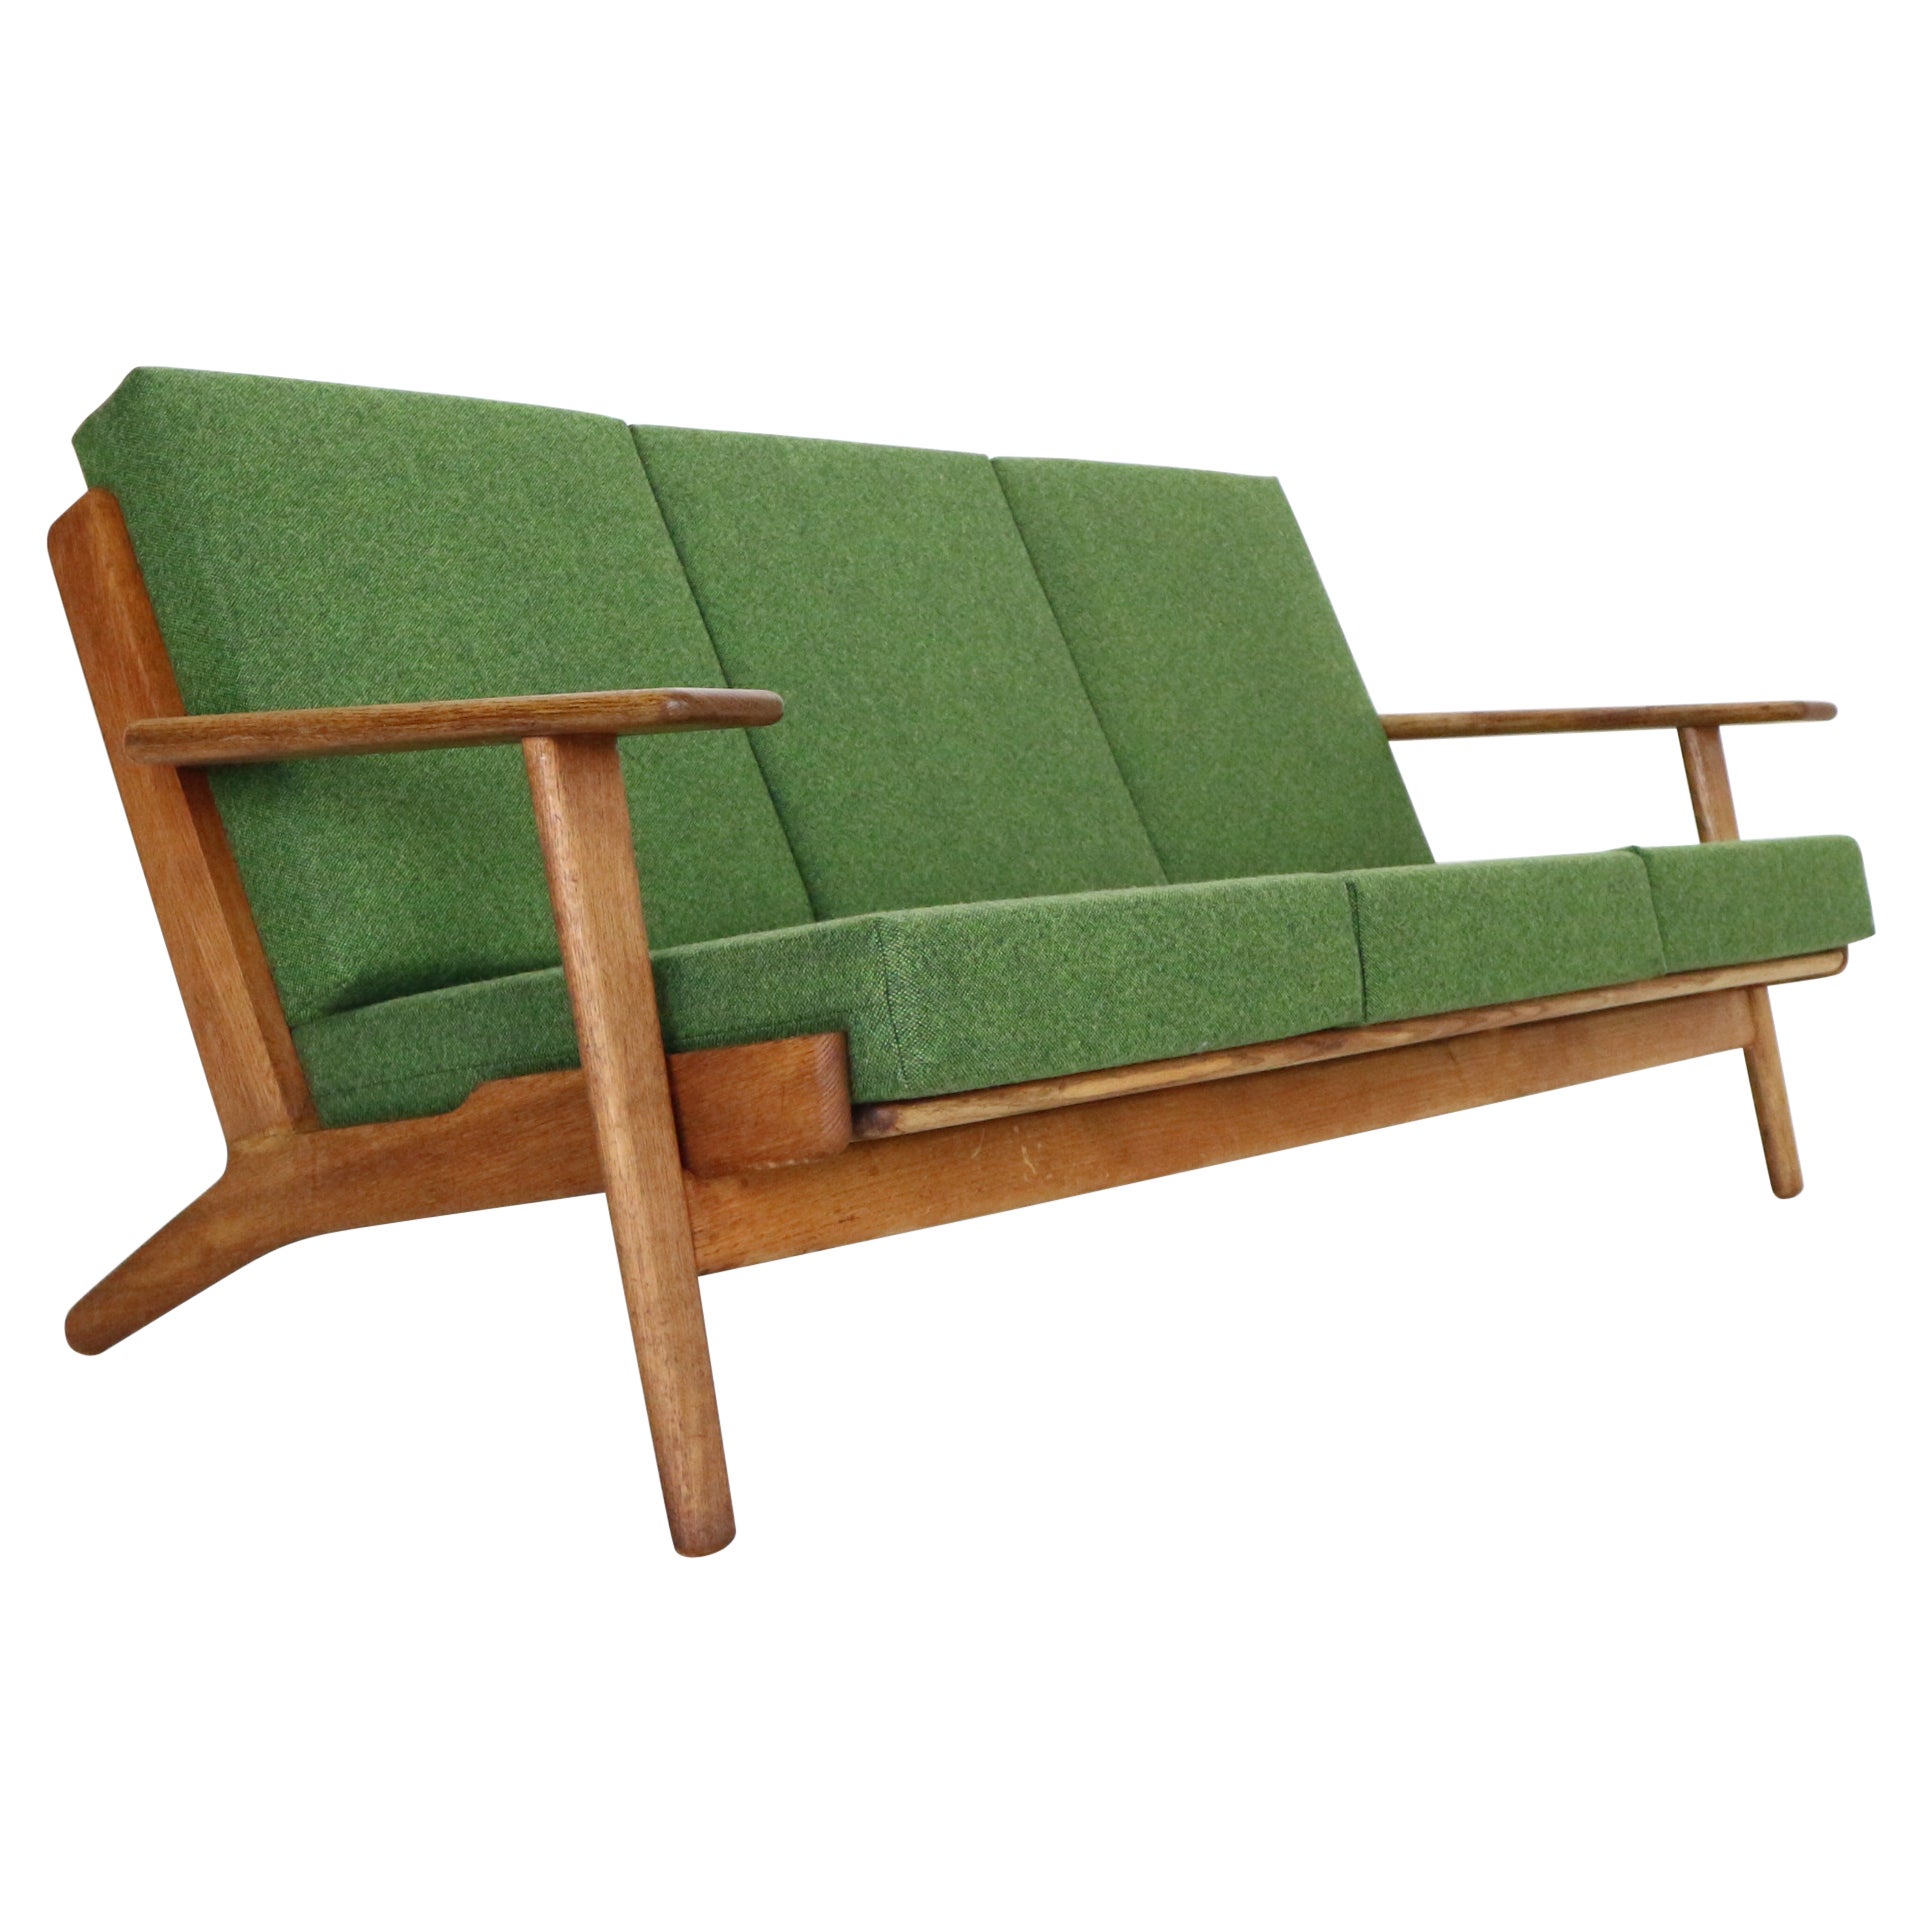 Hans J. Wegner Oak & Green New Reupholstery 3-Seater Sofa "GE290" 1960 Denmark